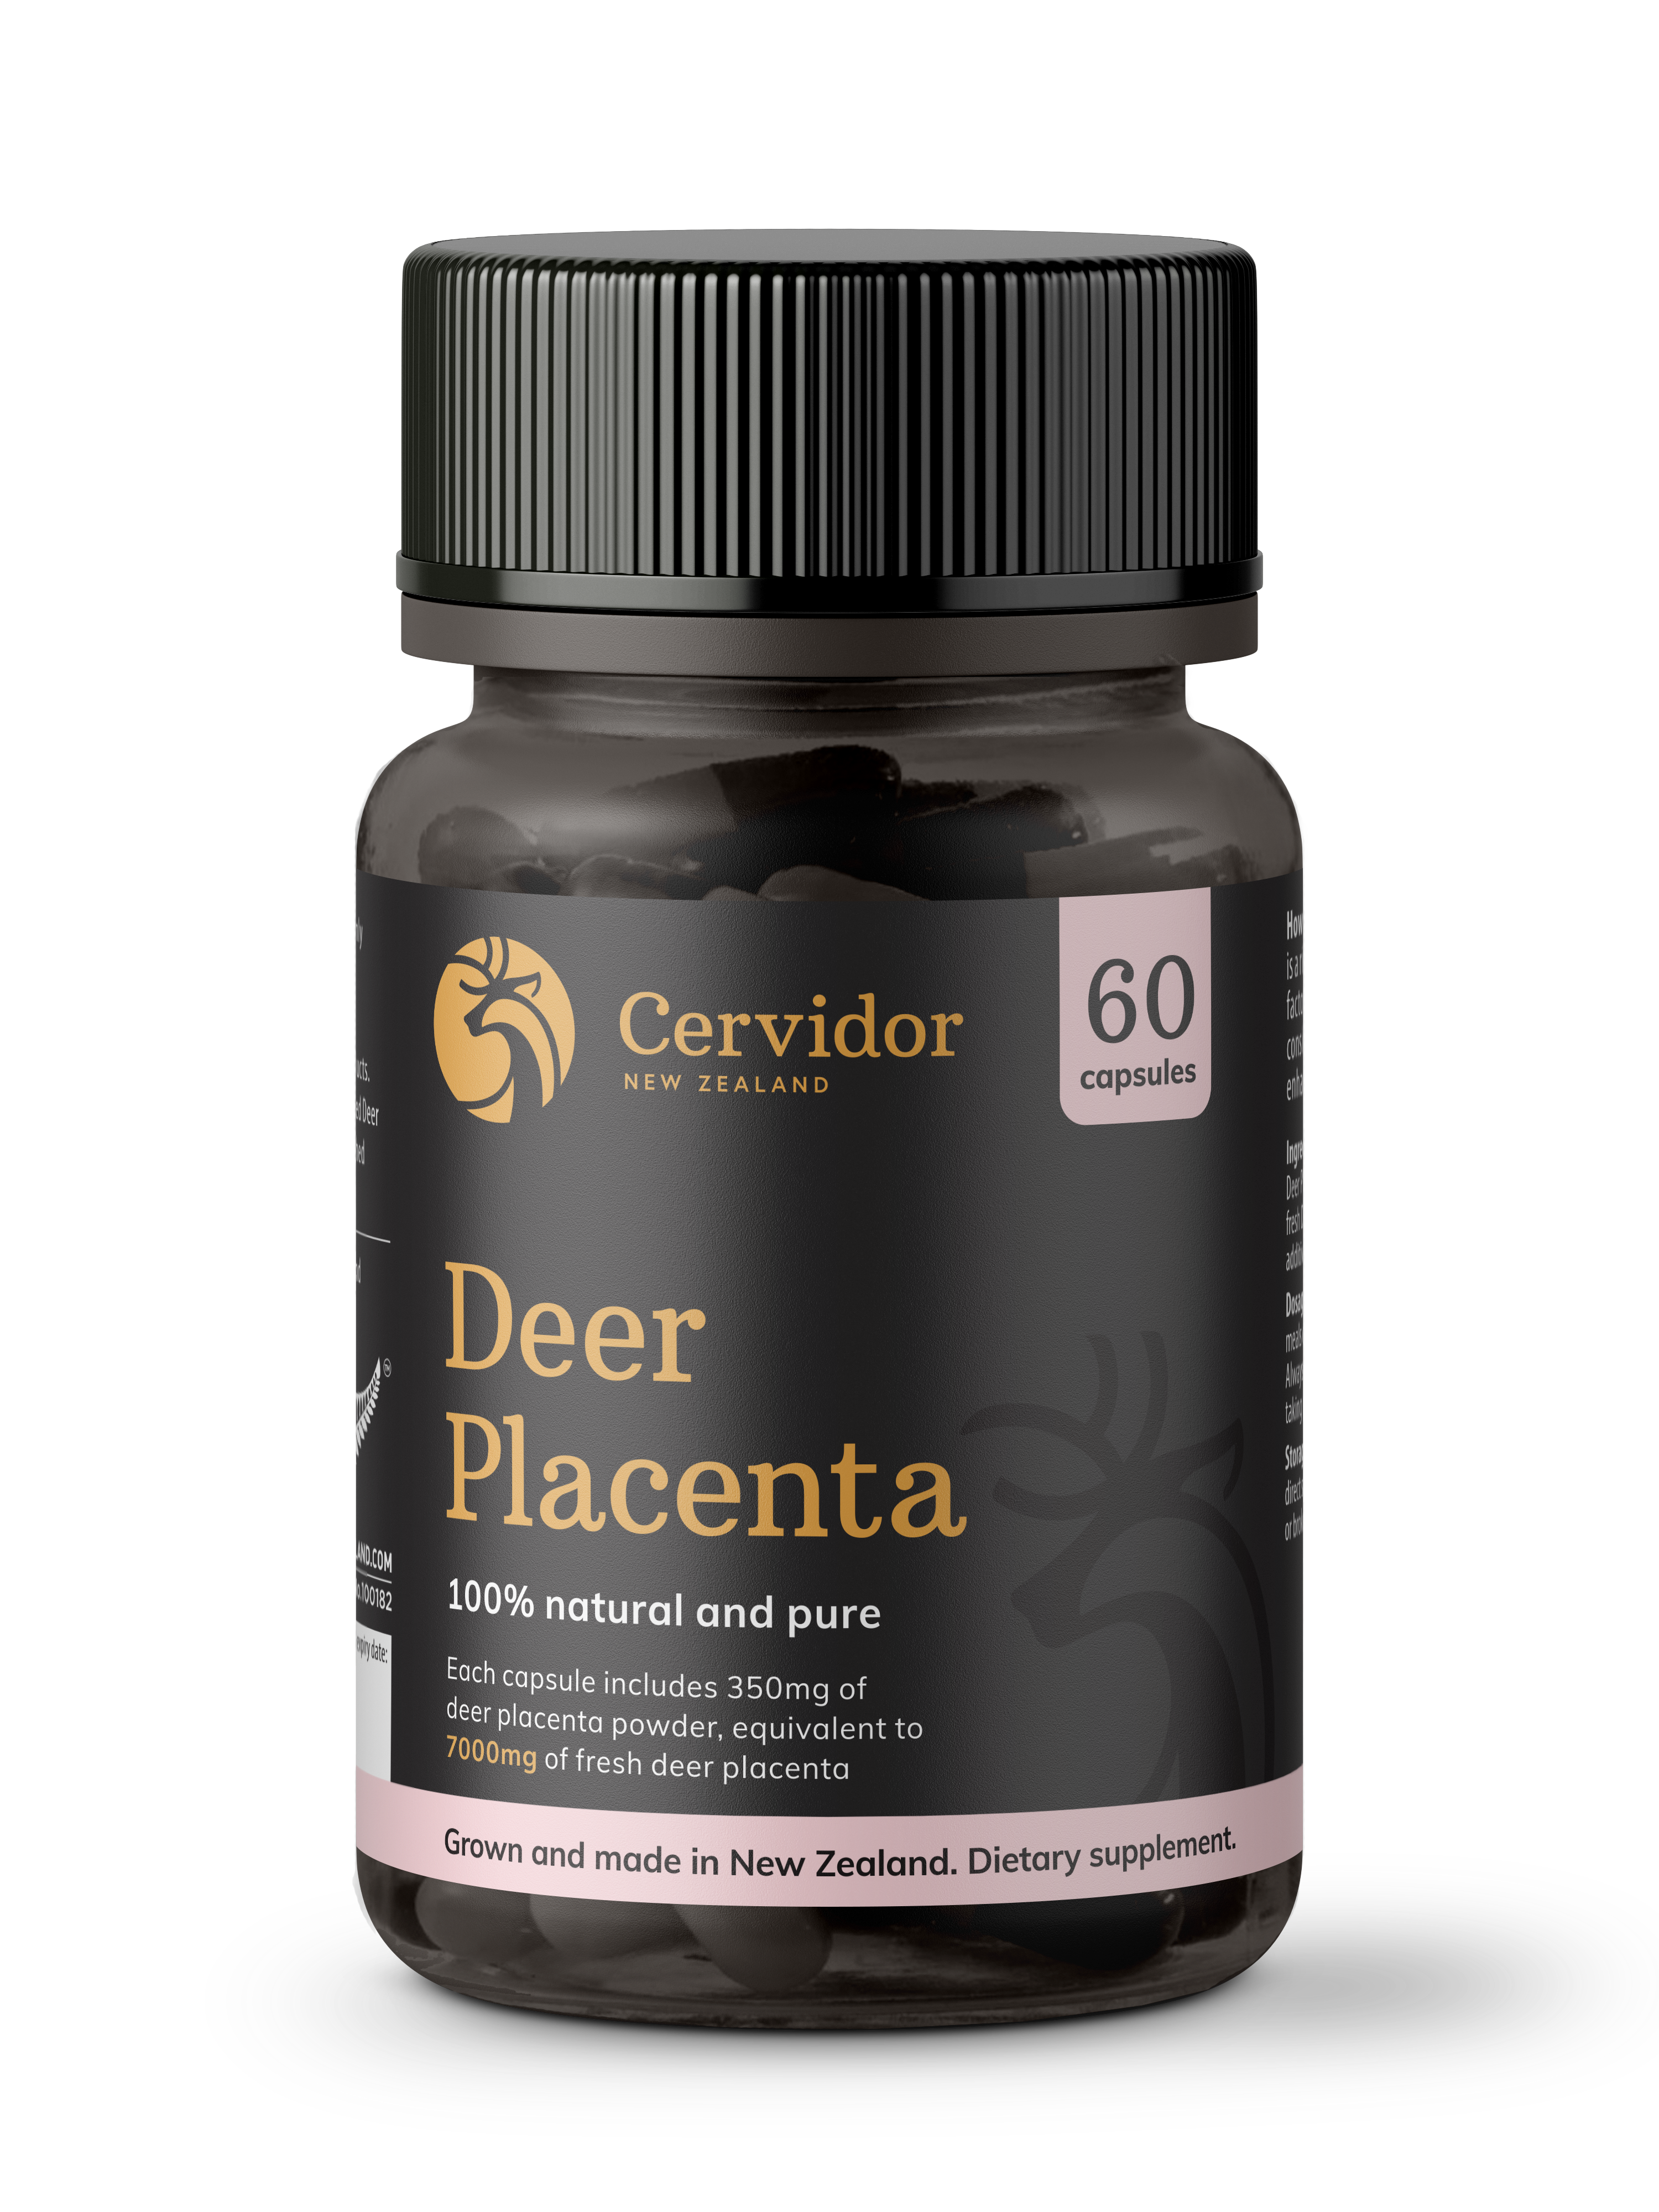 Cervidor Deer Placenta 7,000mg 60 Capsules - beauty supplements, Ingredient: Deer Placenta, new august 2020, nz made, Price  $50-$150, Vender: Cervidor, Vendor  Cervidor - Aotea Wellness